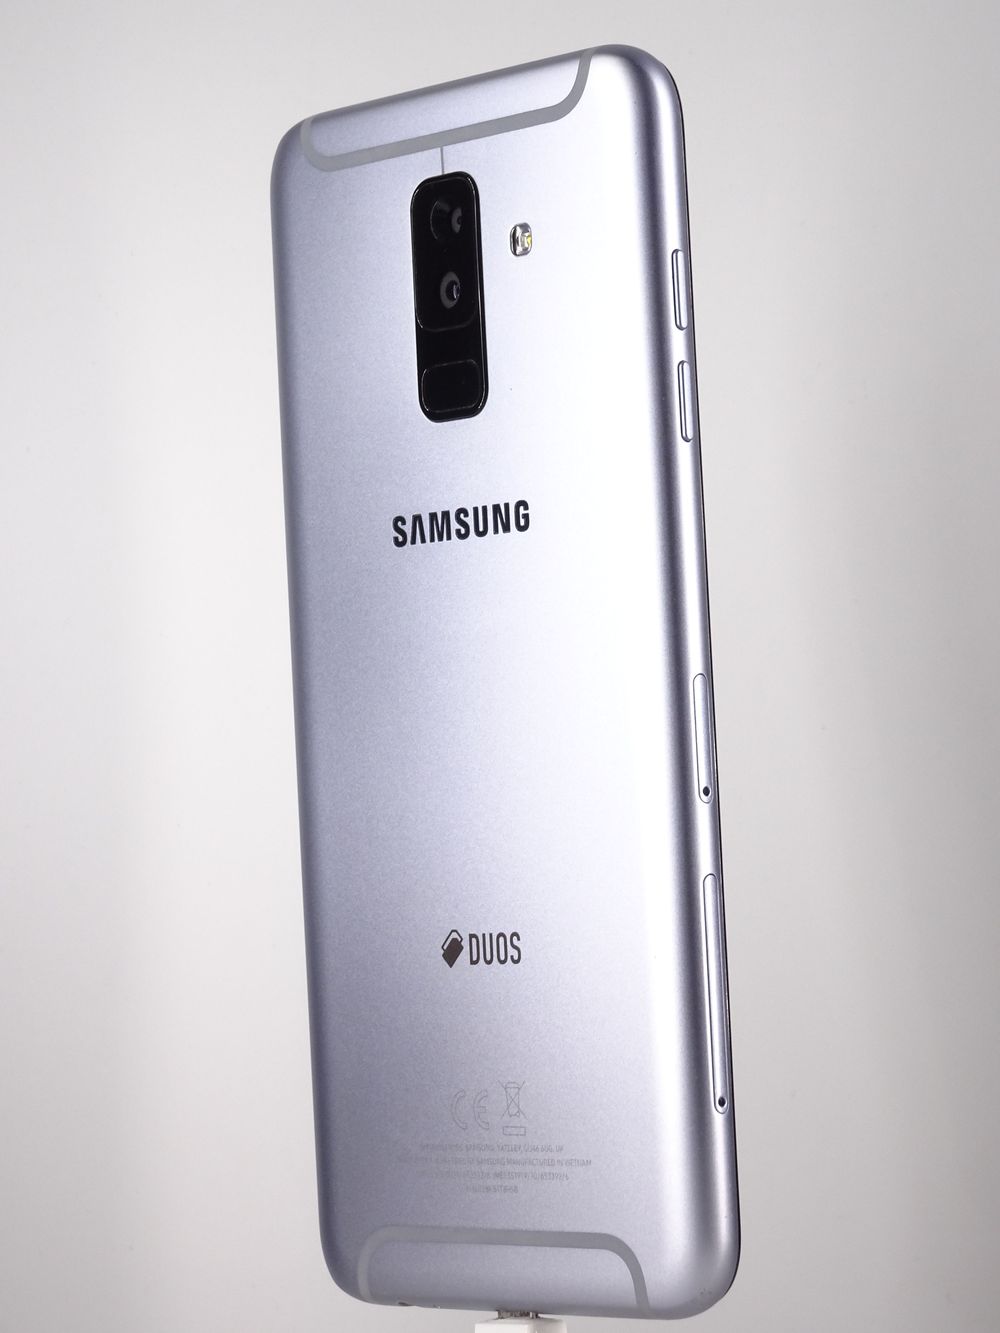 Мобилен телефон Samsung, Galaxy A6 Plus (2018), 32 GB, Lavender,  Като нов